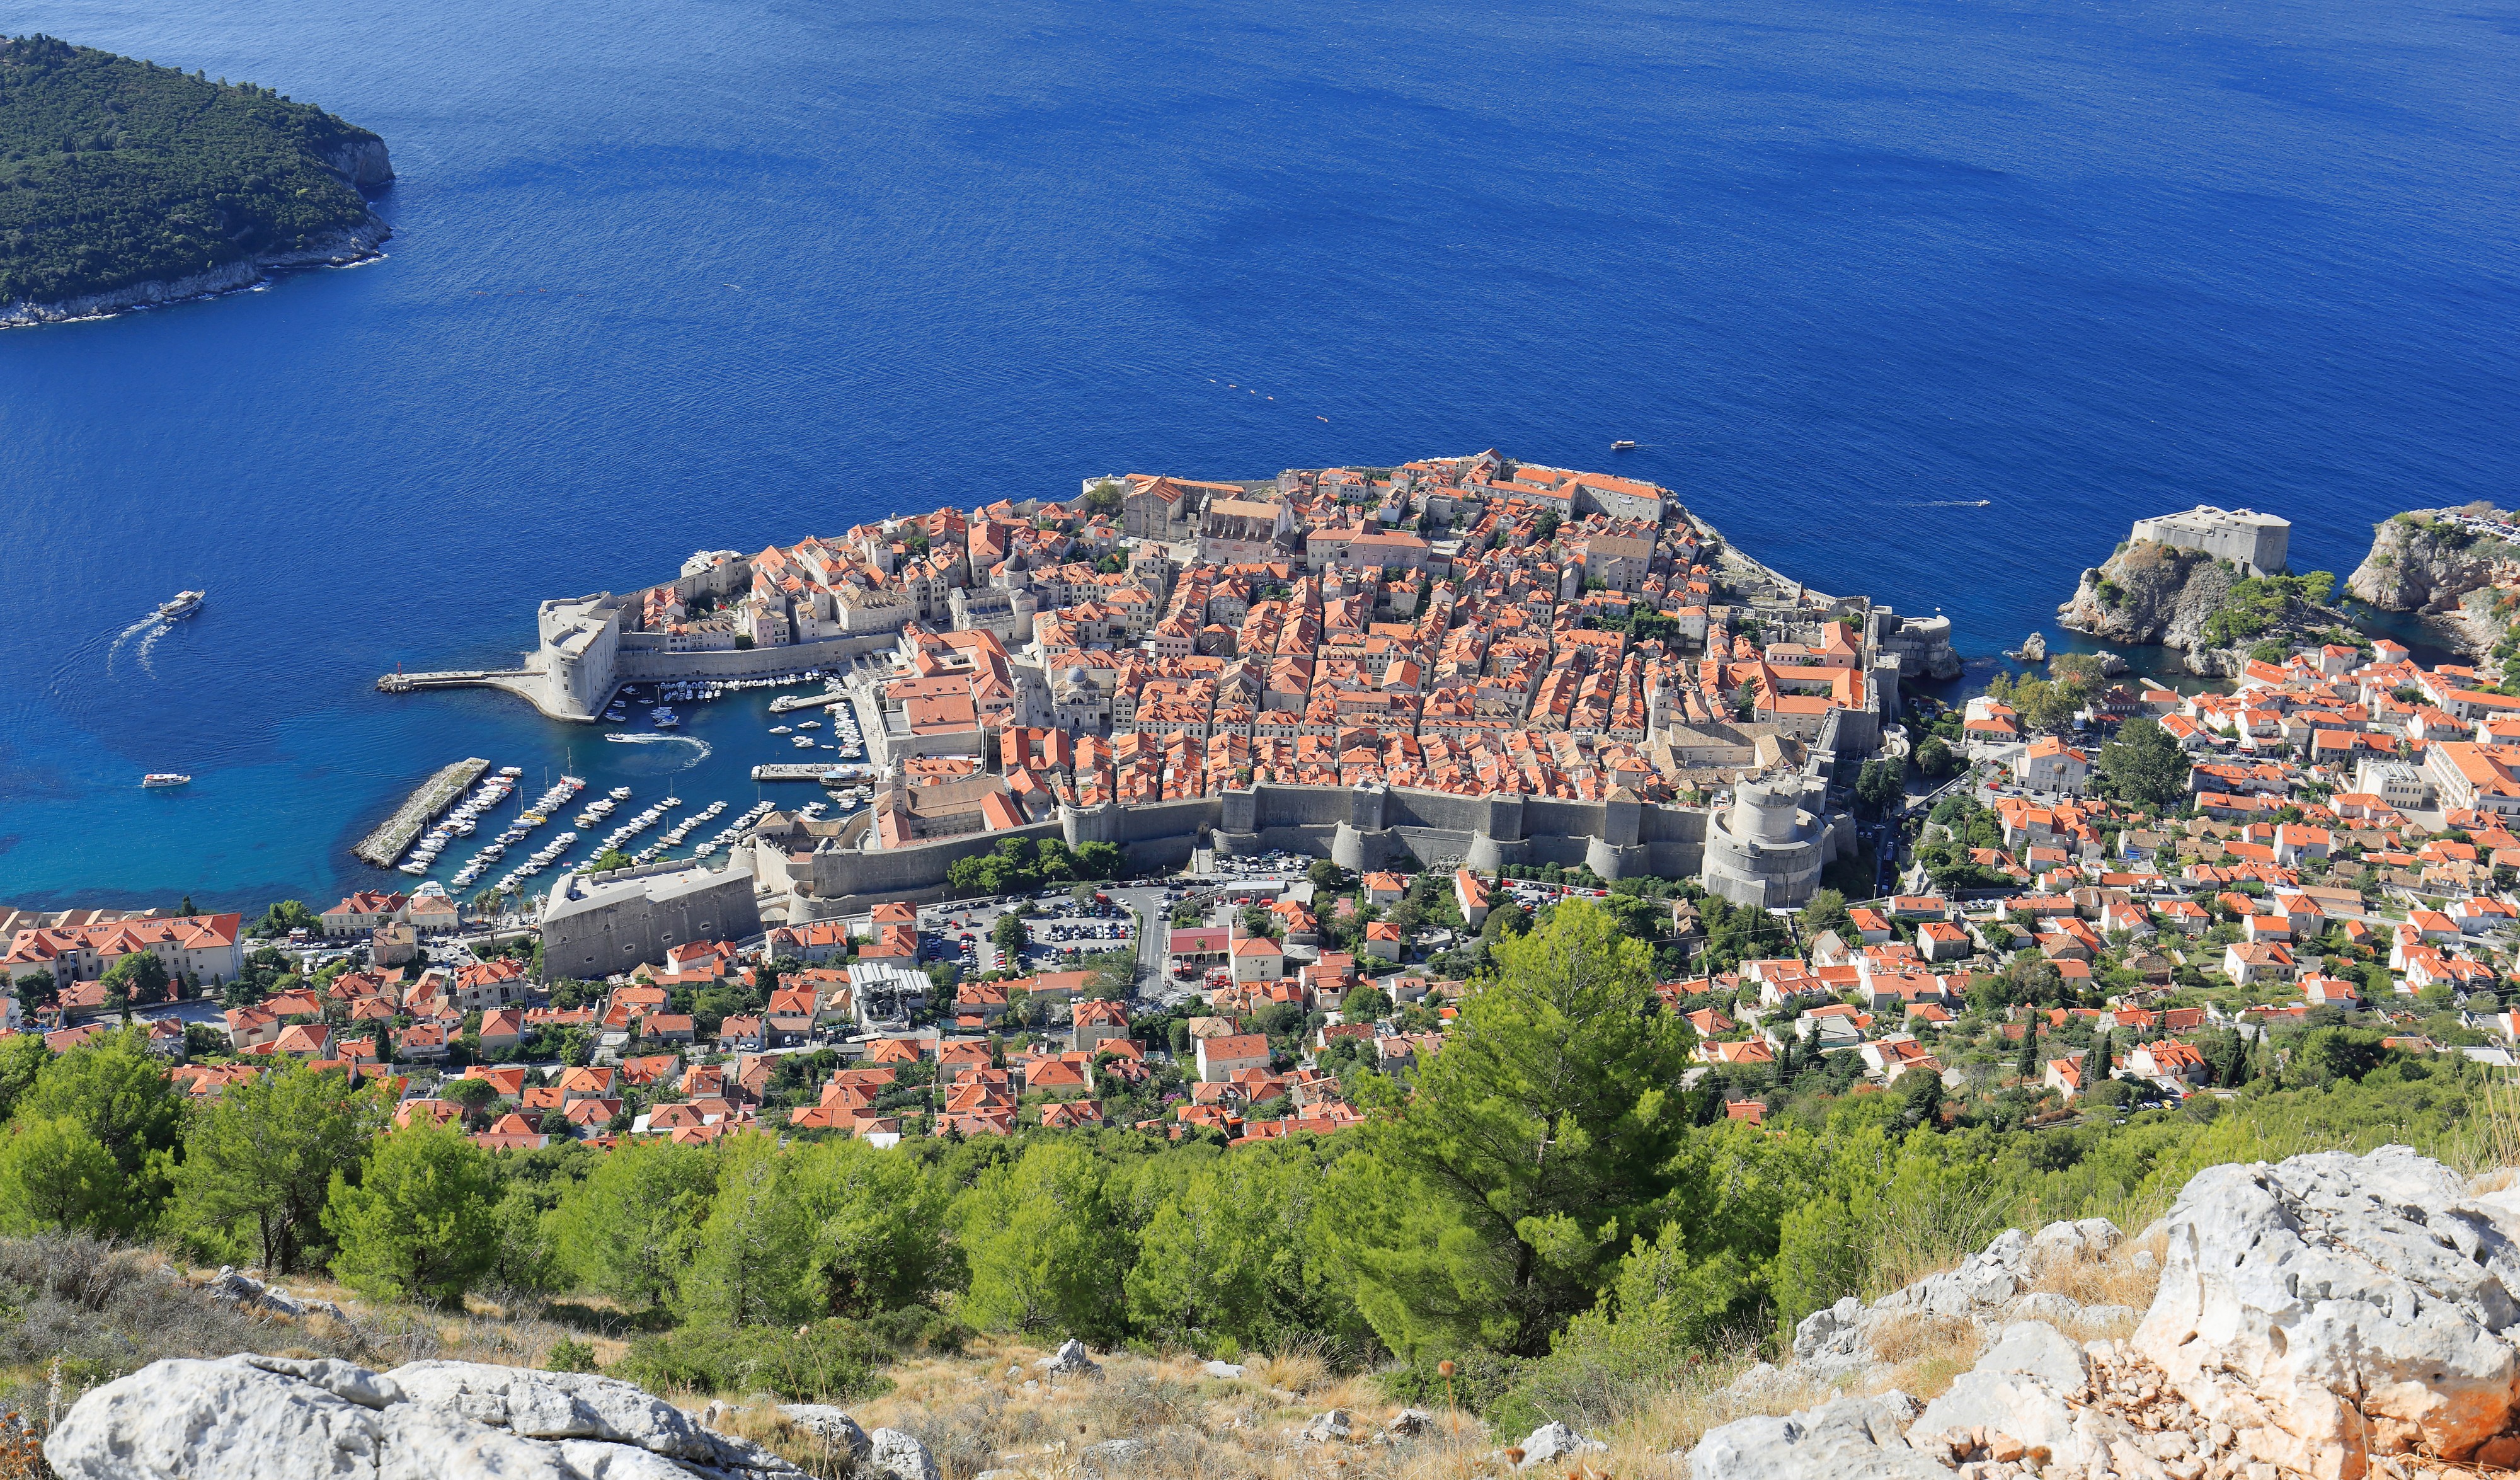 Dubrovnik as seen from Srđ - September 2017